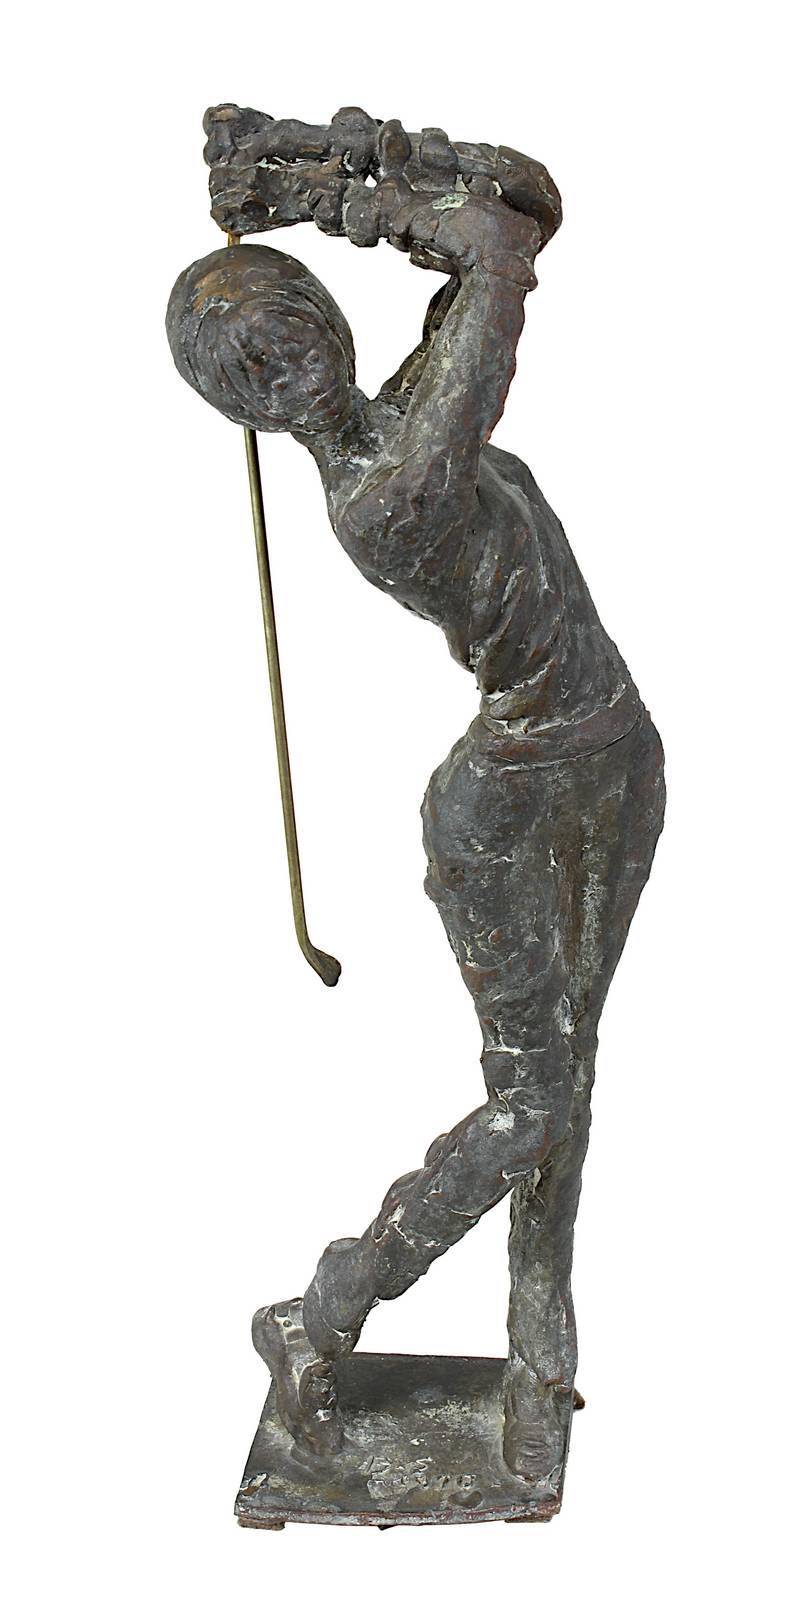 Schröder, Hans (Saarbrücken 1930 - 2010 Saarbrücken), Golfspielerin, Bronzefigur in bewegter